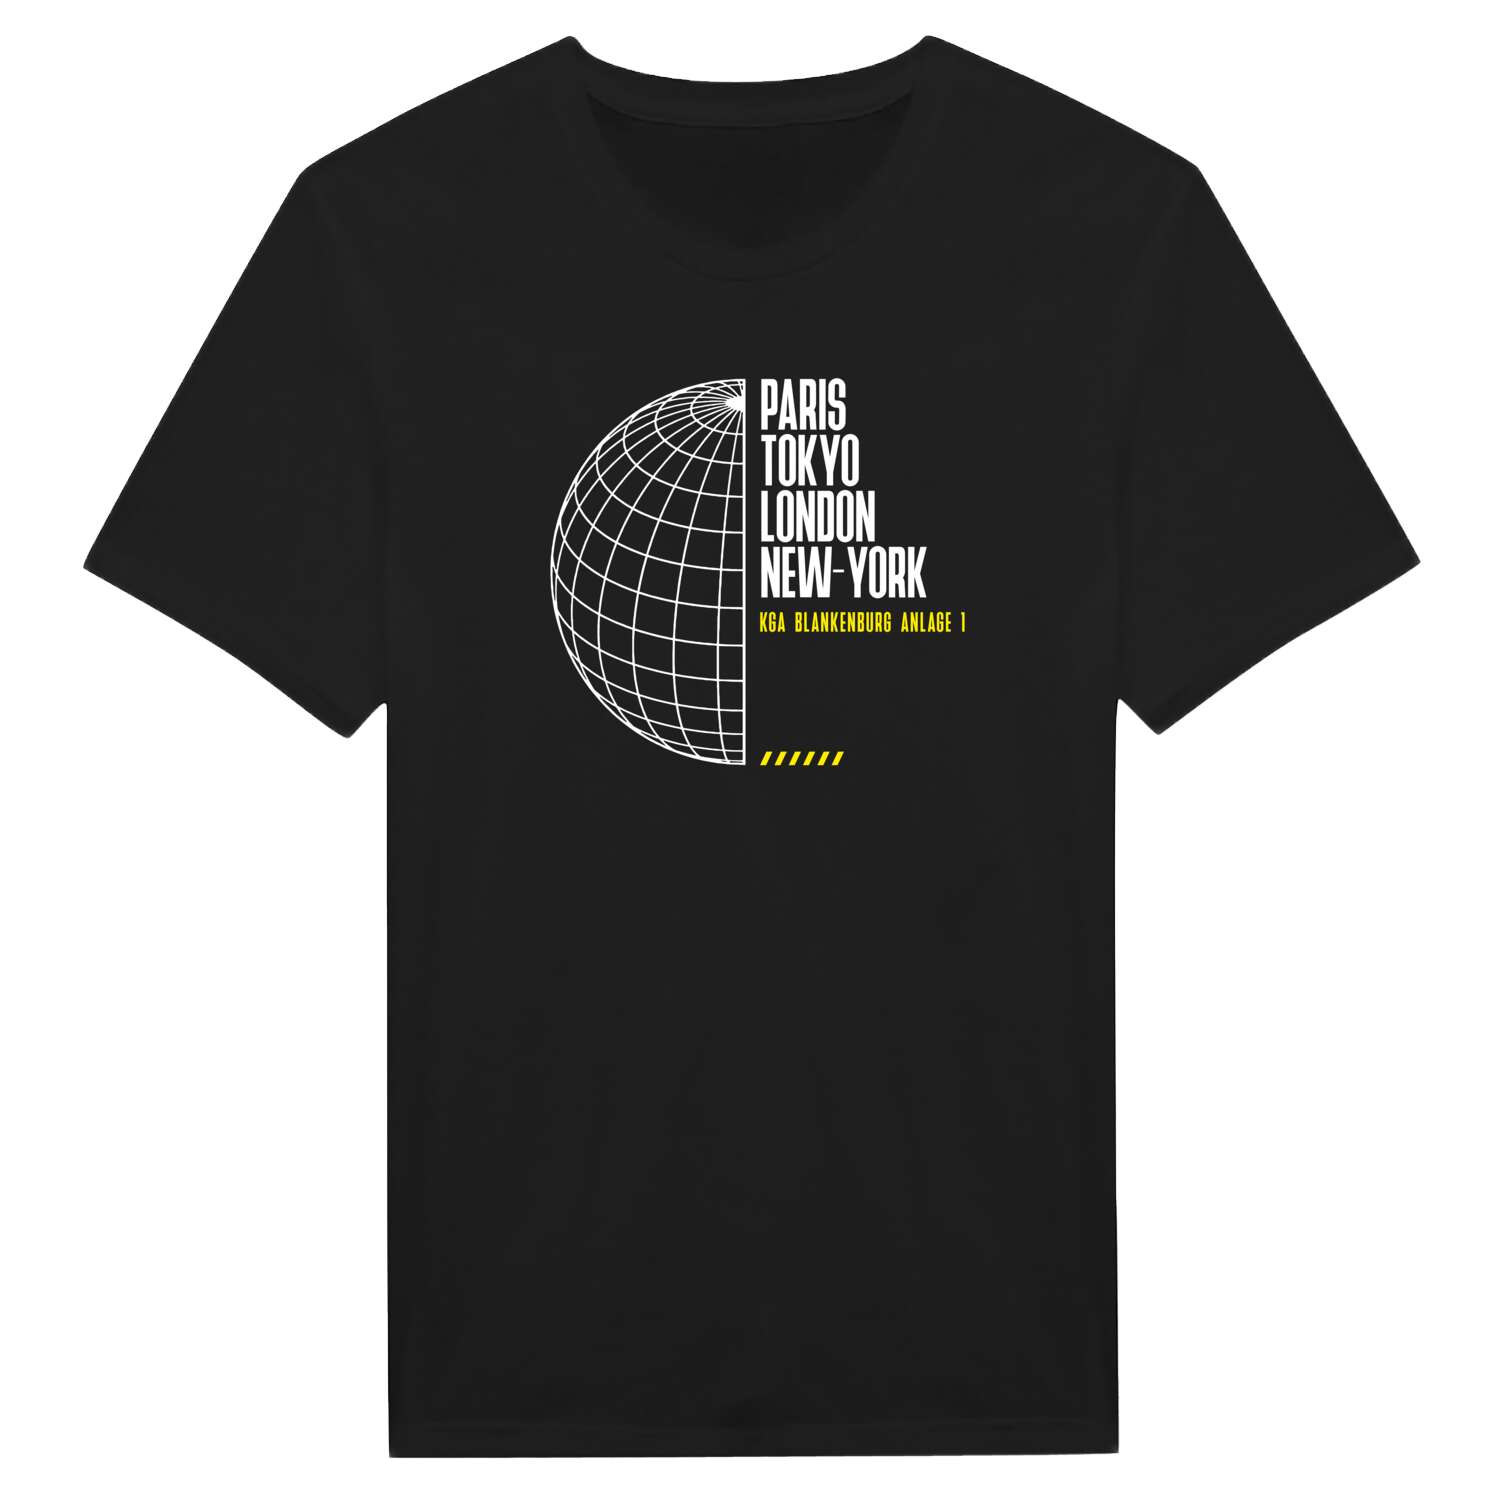 KGA Blankenburg Anlage 1 T-Shirt »Paris Tokyo London«